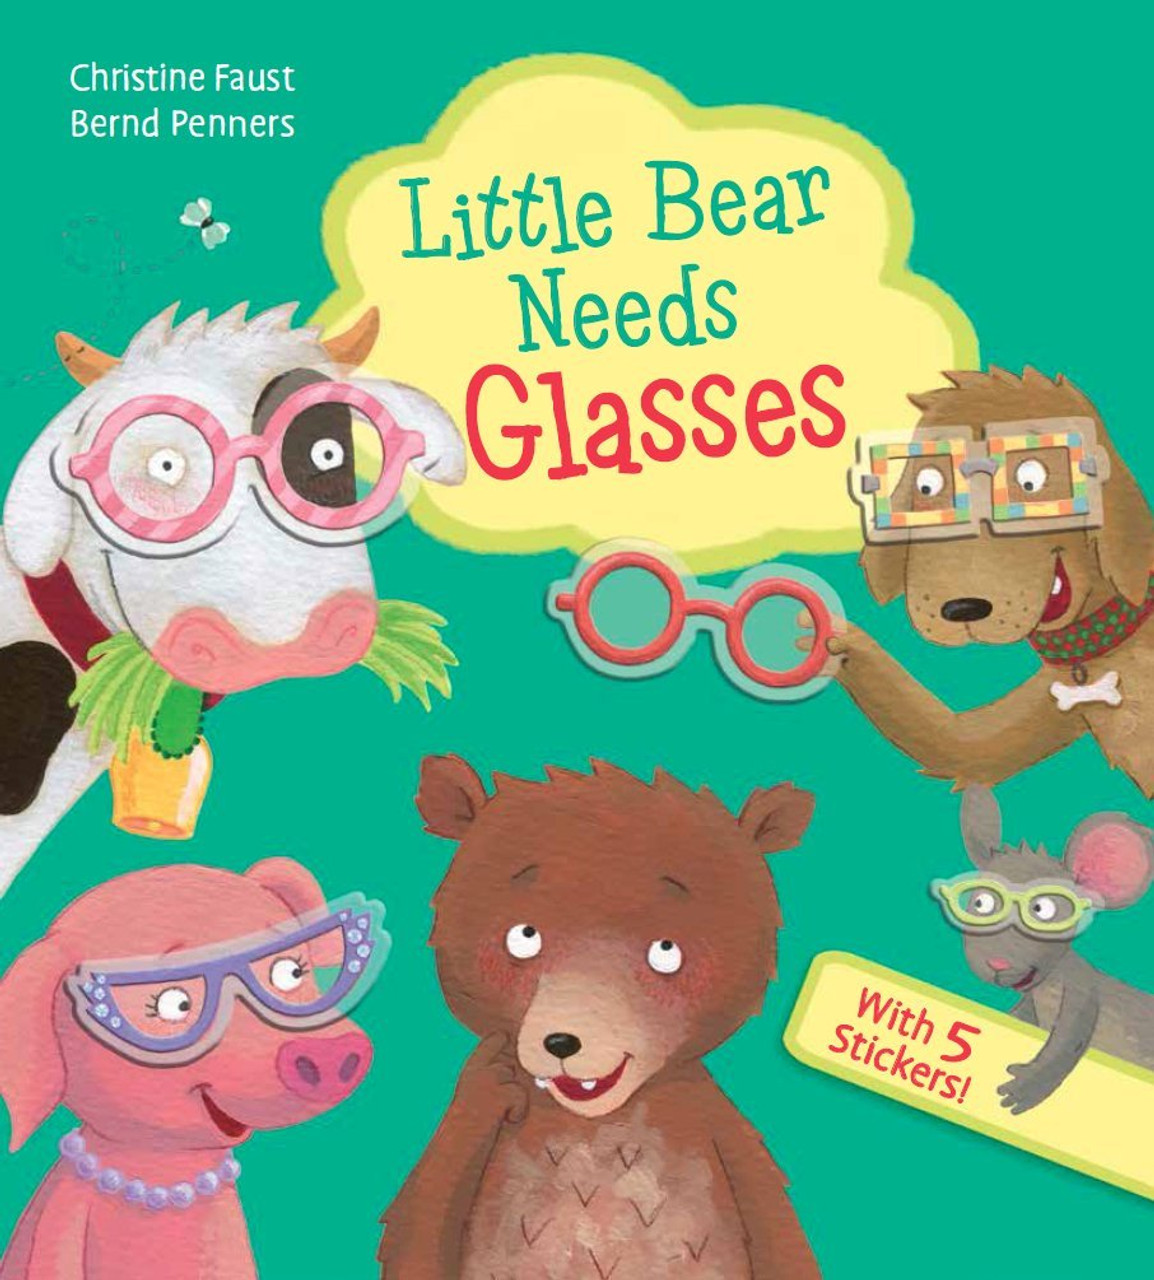 LITTLE BEAR NEEDS GLASSES BB